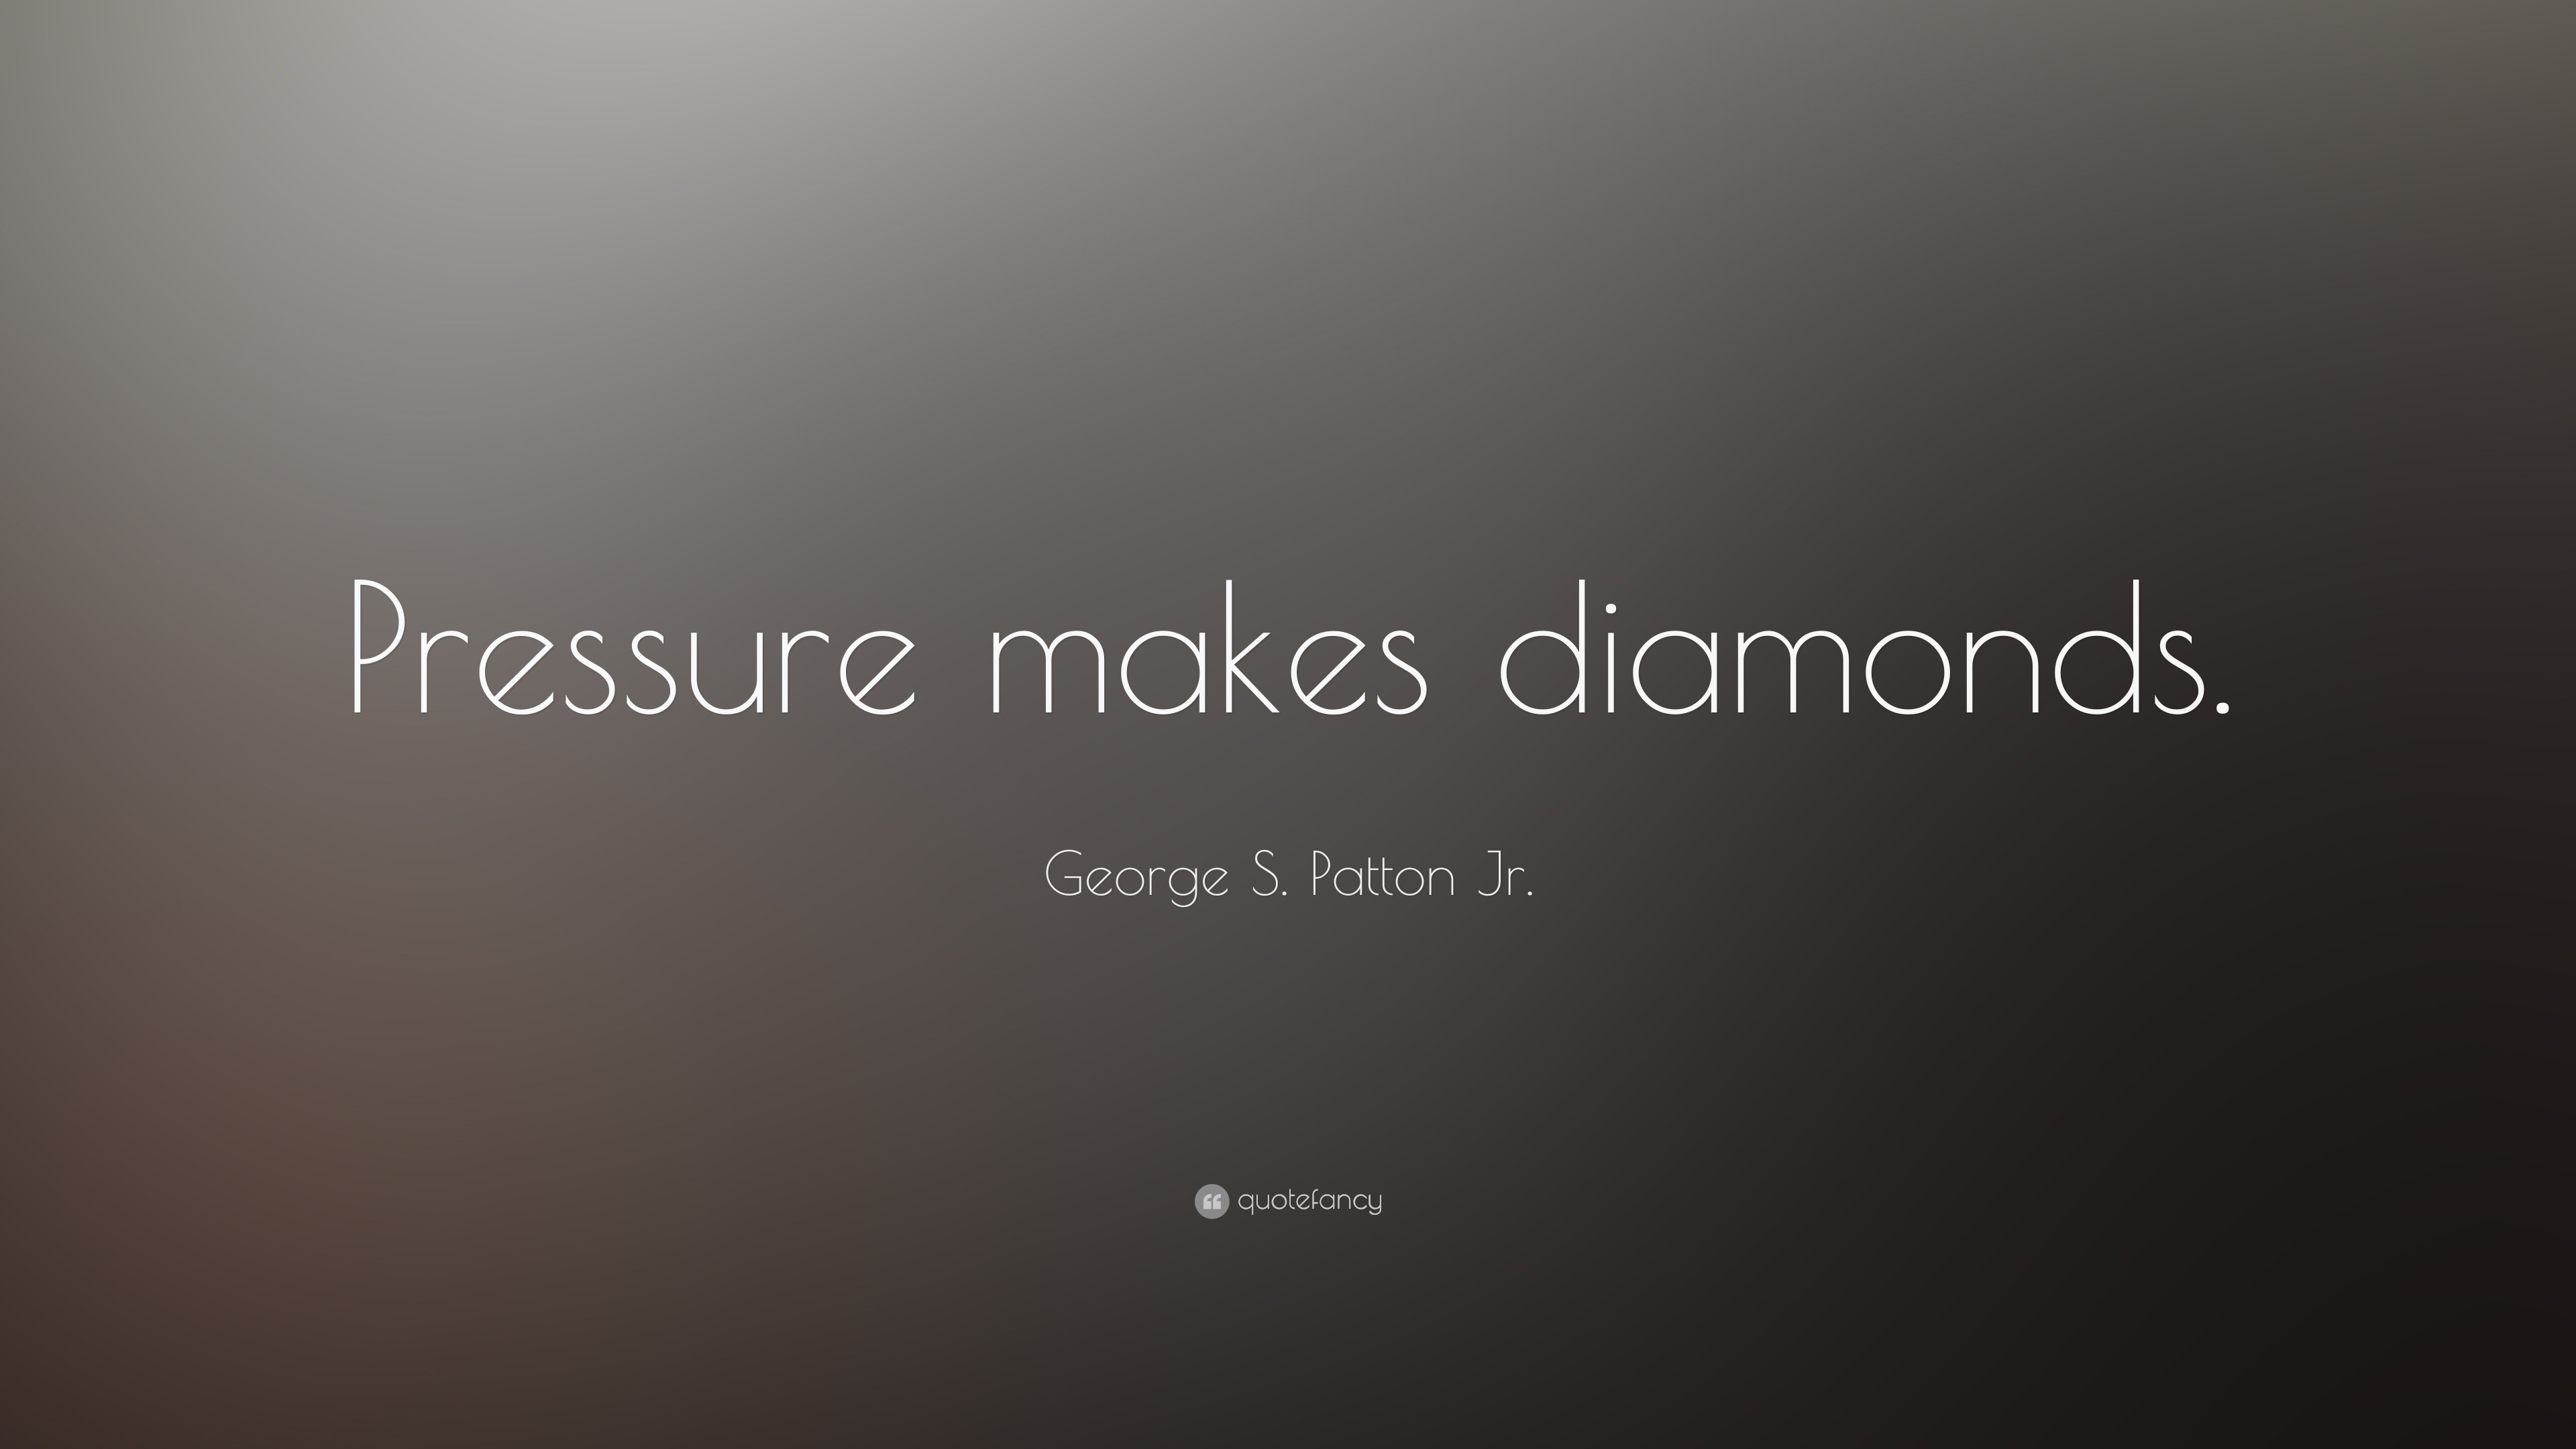 George S. Patton Jr. Quote: “Pressure makes diamonds.”